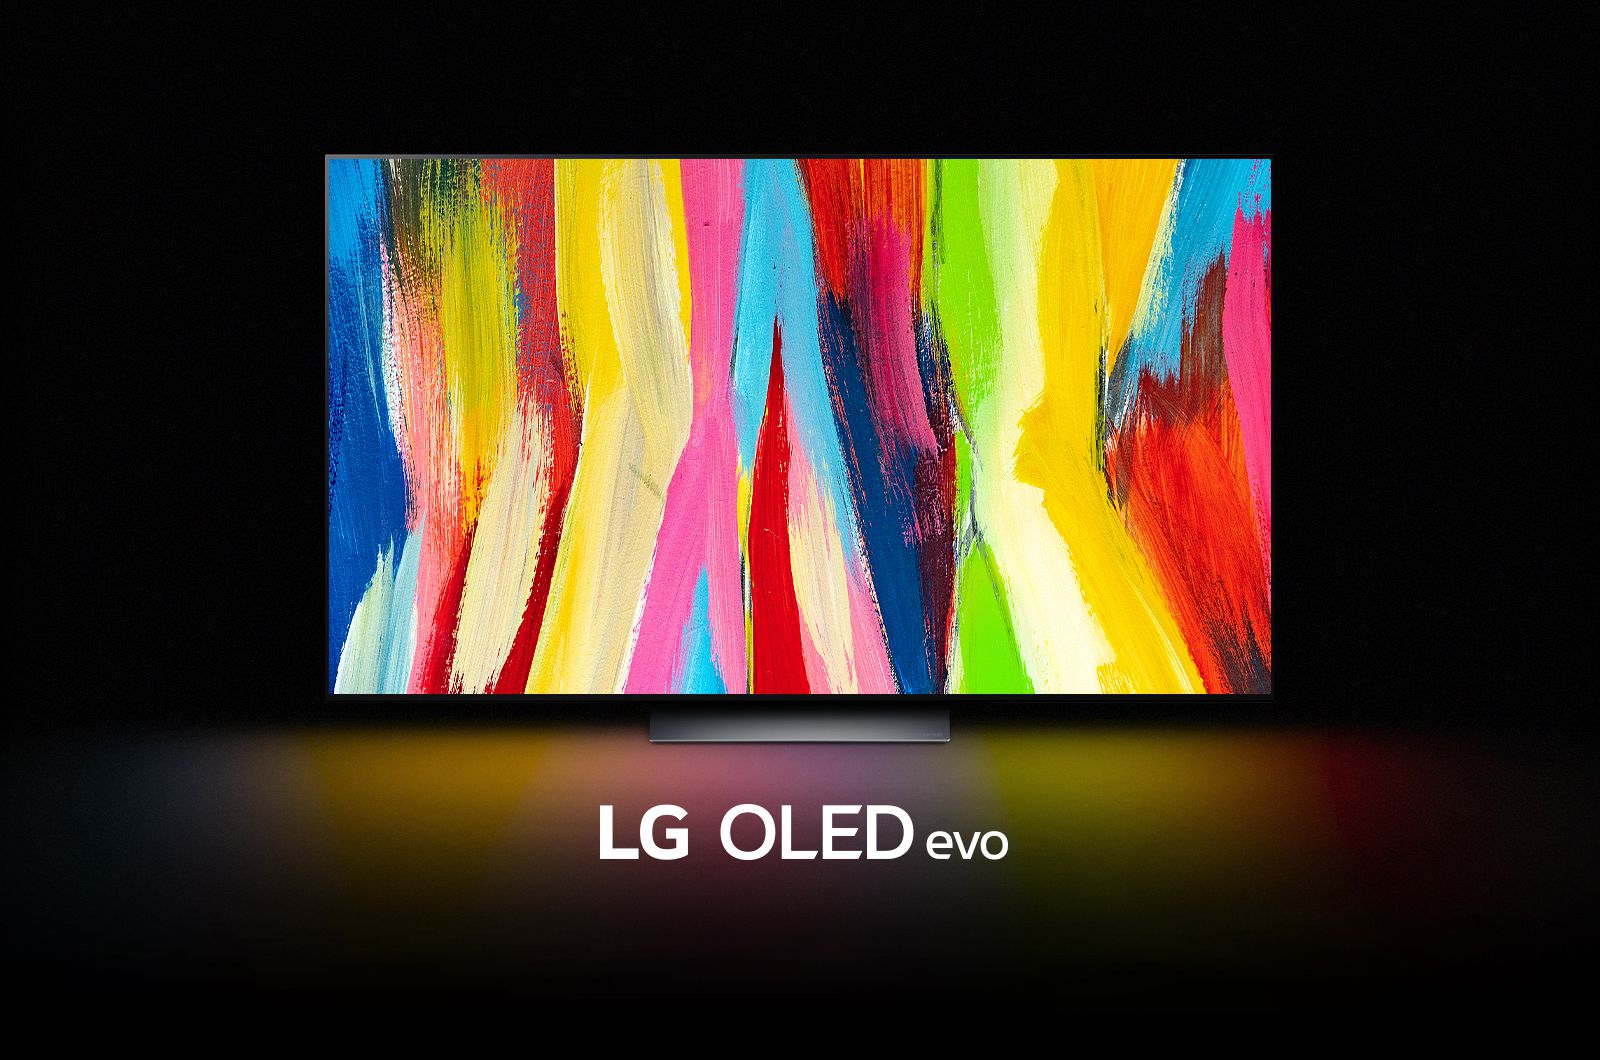 LG OLED C2 stoji v temni sobi z barvitimi abstraktnimi umetninami navpičnih črt na zaslonu in besedami "LG OLED evo" pod njim.